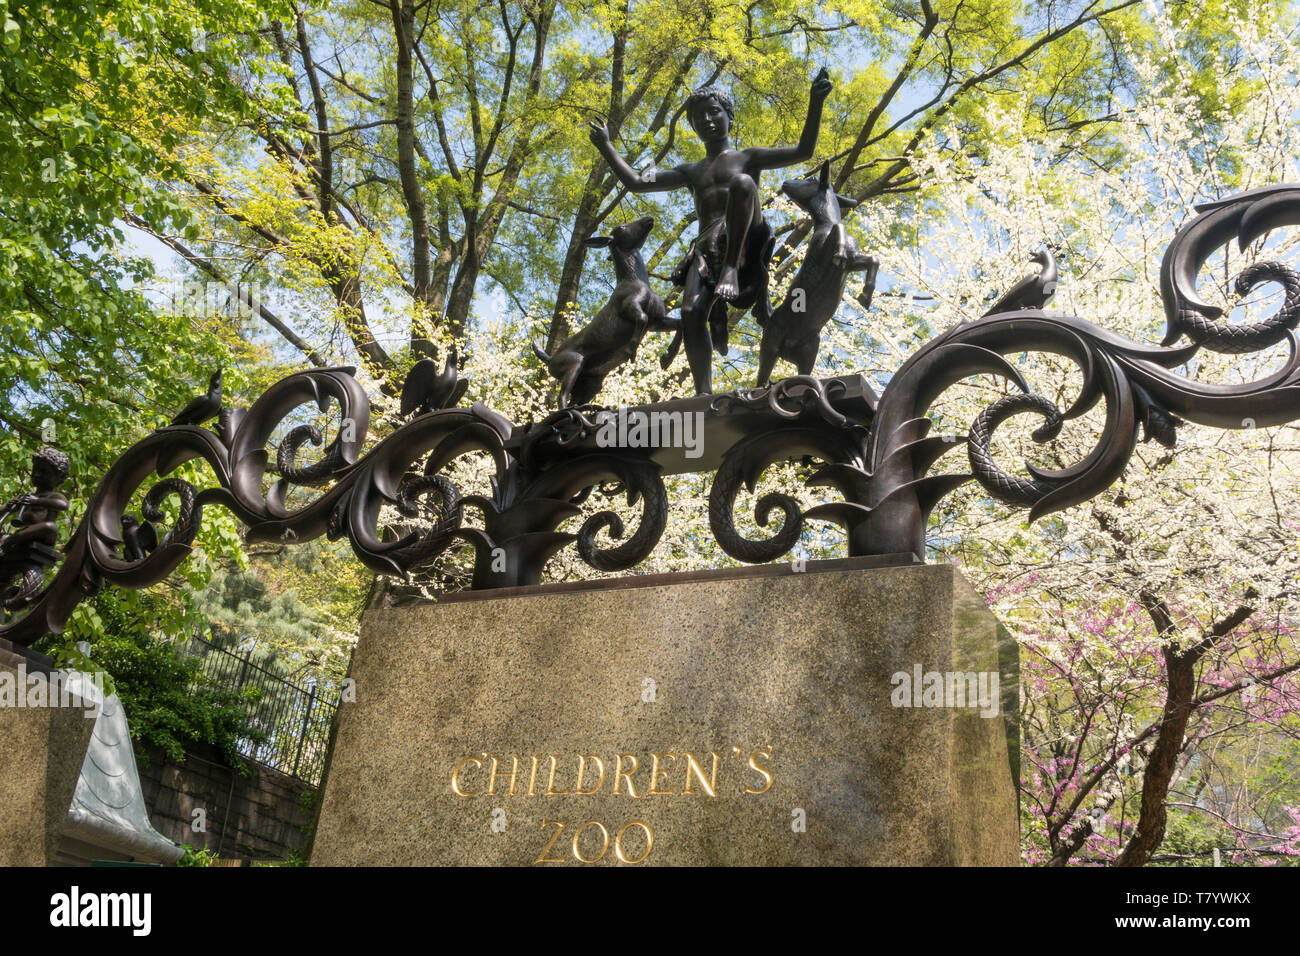 La Lehman cancelli sono una scultura in bronzo Landmark presso lo Zoo dei Bambini nel Central Park di New York City, Stati Uniti d'America Foto Stock